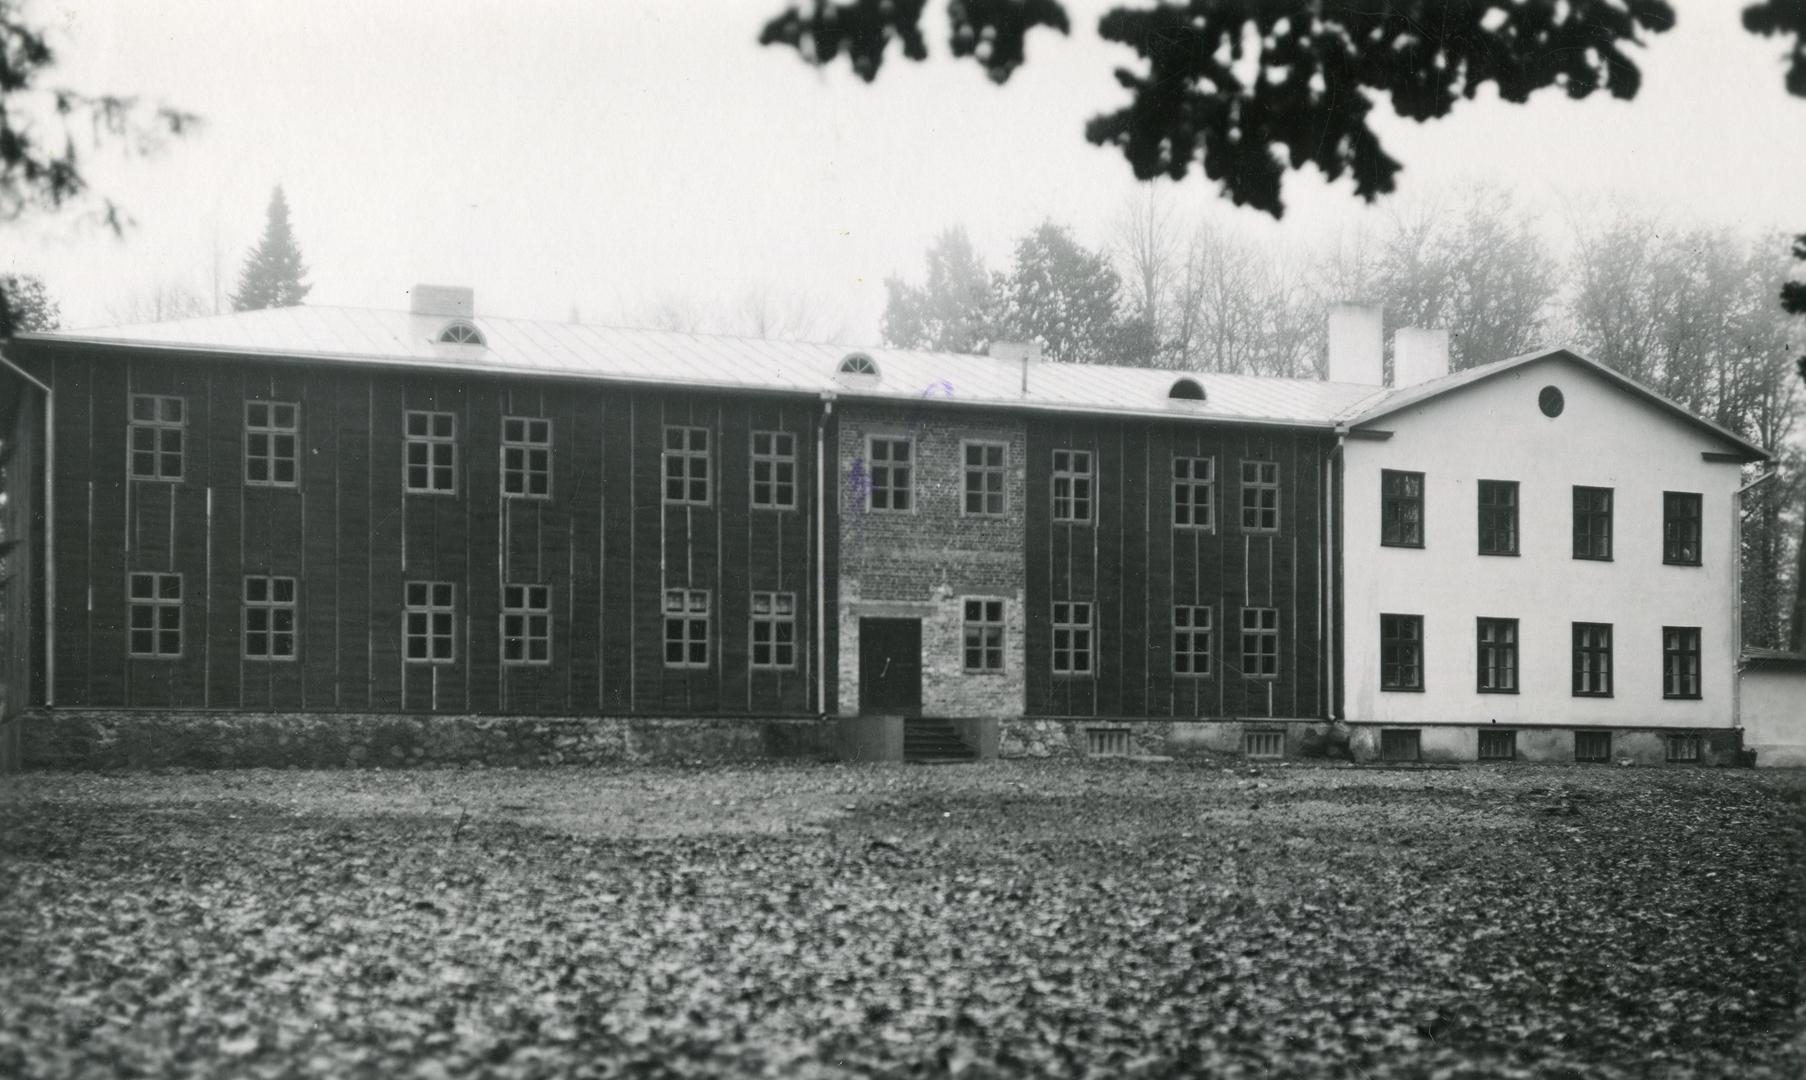 Sürgavere 6-kl Start School building in Viljandimaa